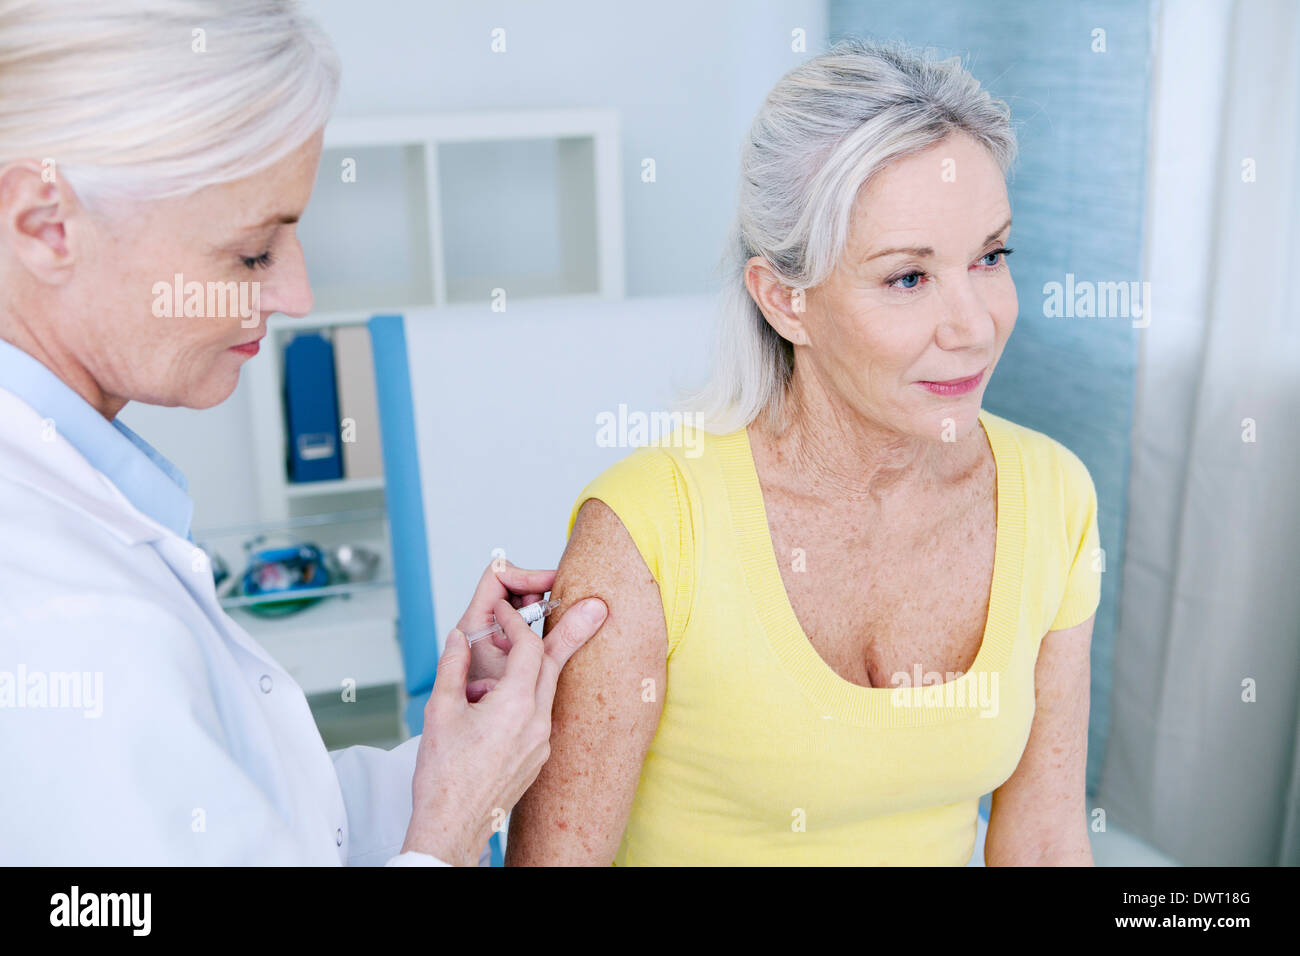 Impfung von einer älteren person Stockfoto